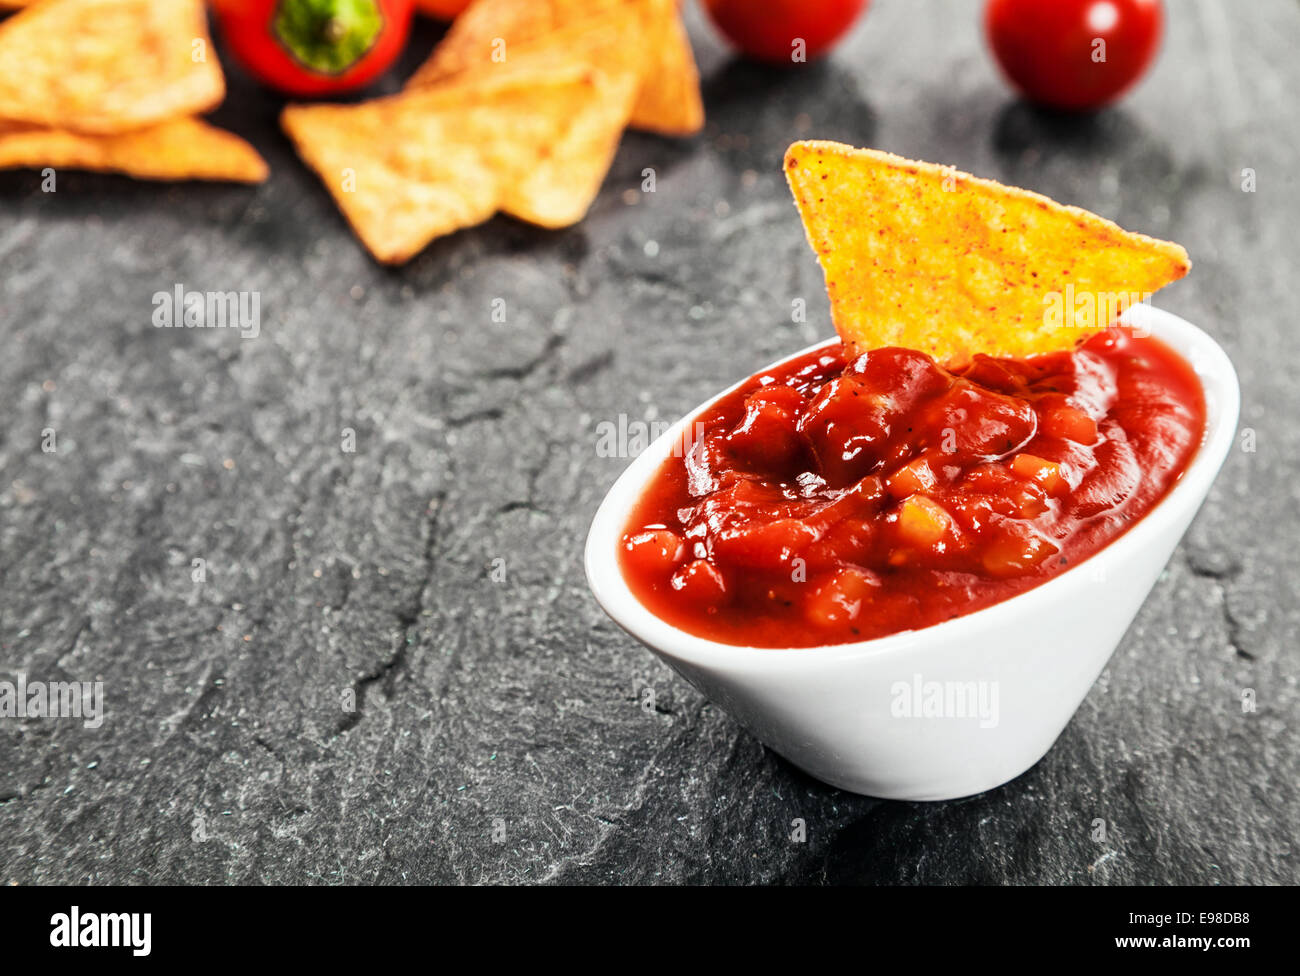 Servir la salsa picante de la salsa de tomate y los chiles en un recipiente con tortillas de maíz o nachos con salsa para una sabrosa Foto de stock